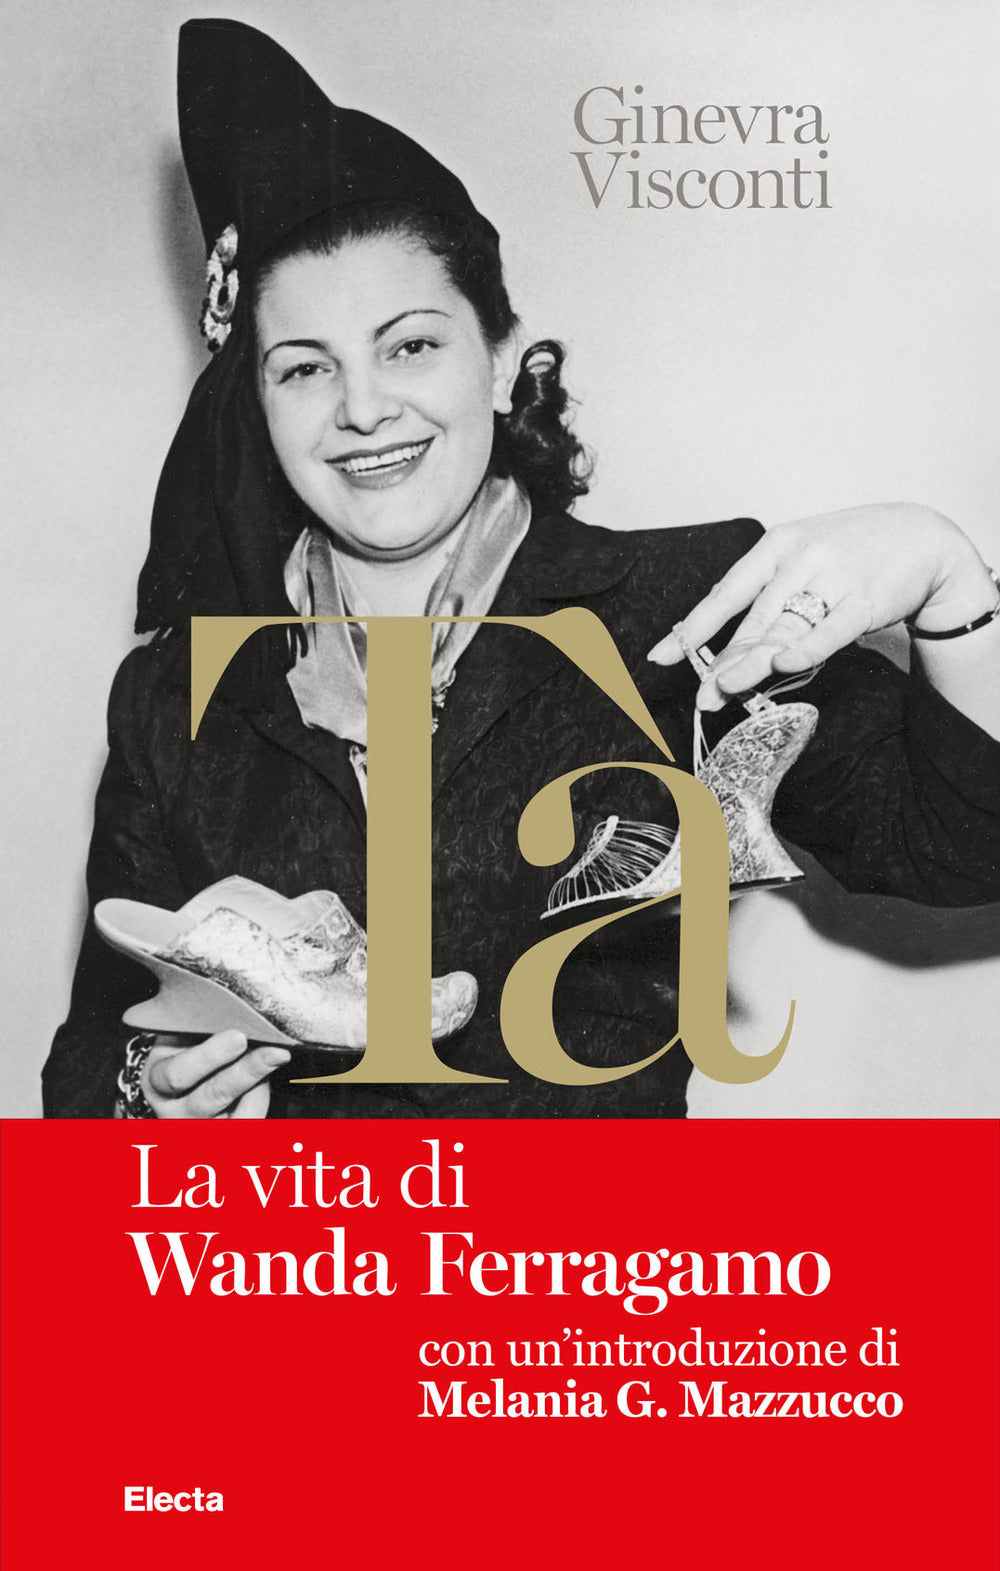 Nel libro rosso di Tà. La vita di Wanda Ferragamo.